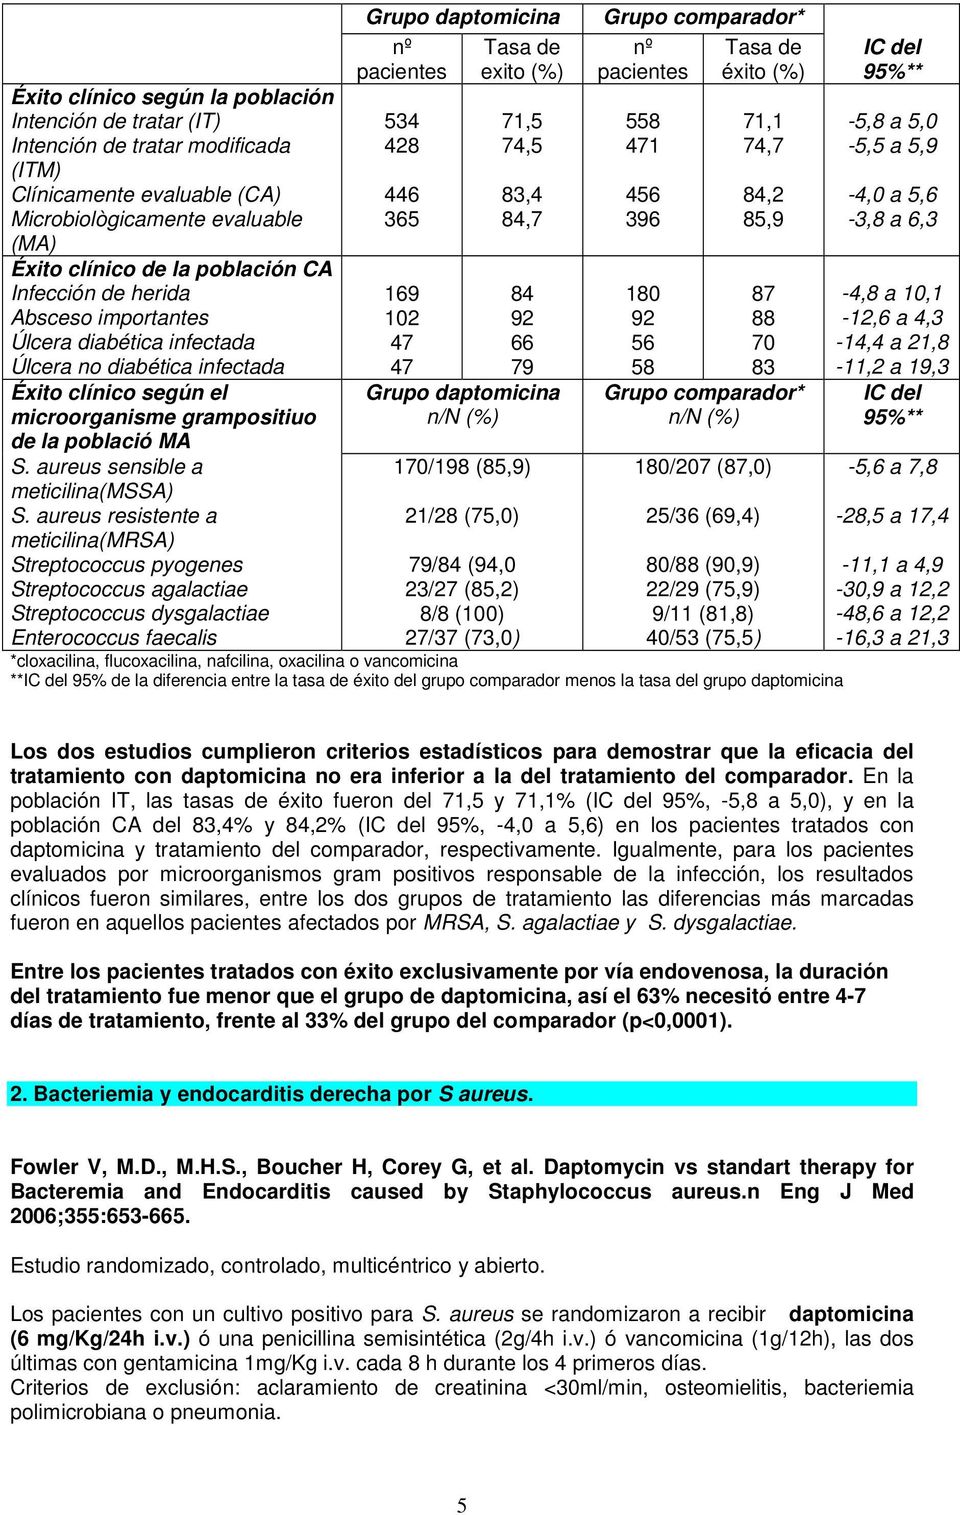 aureus sensible a meticilina(mssa) S.